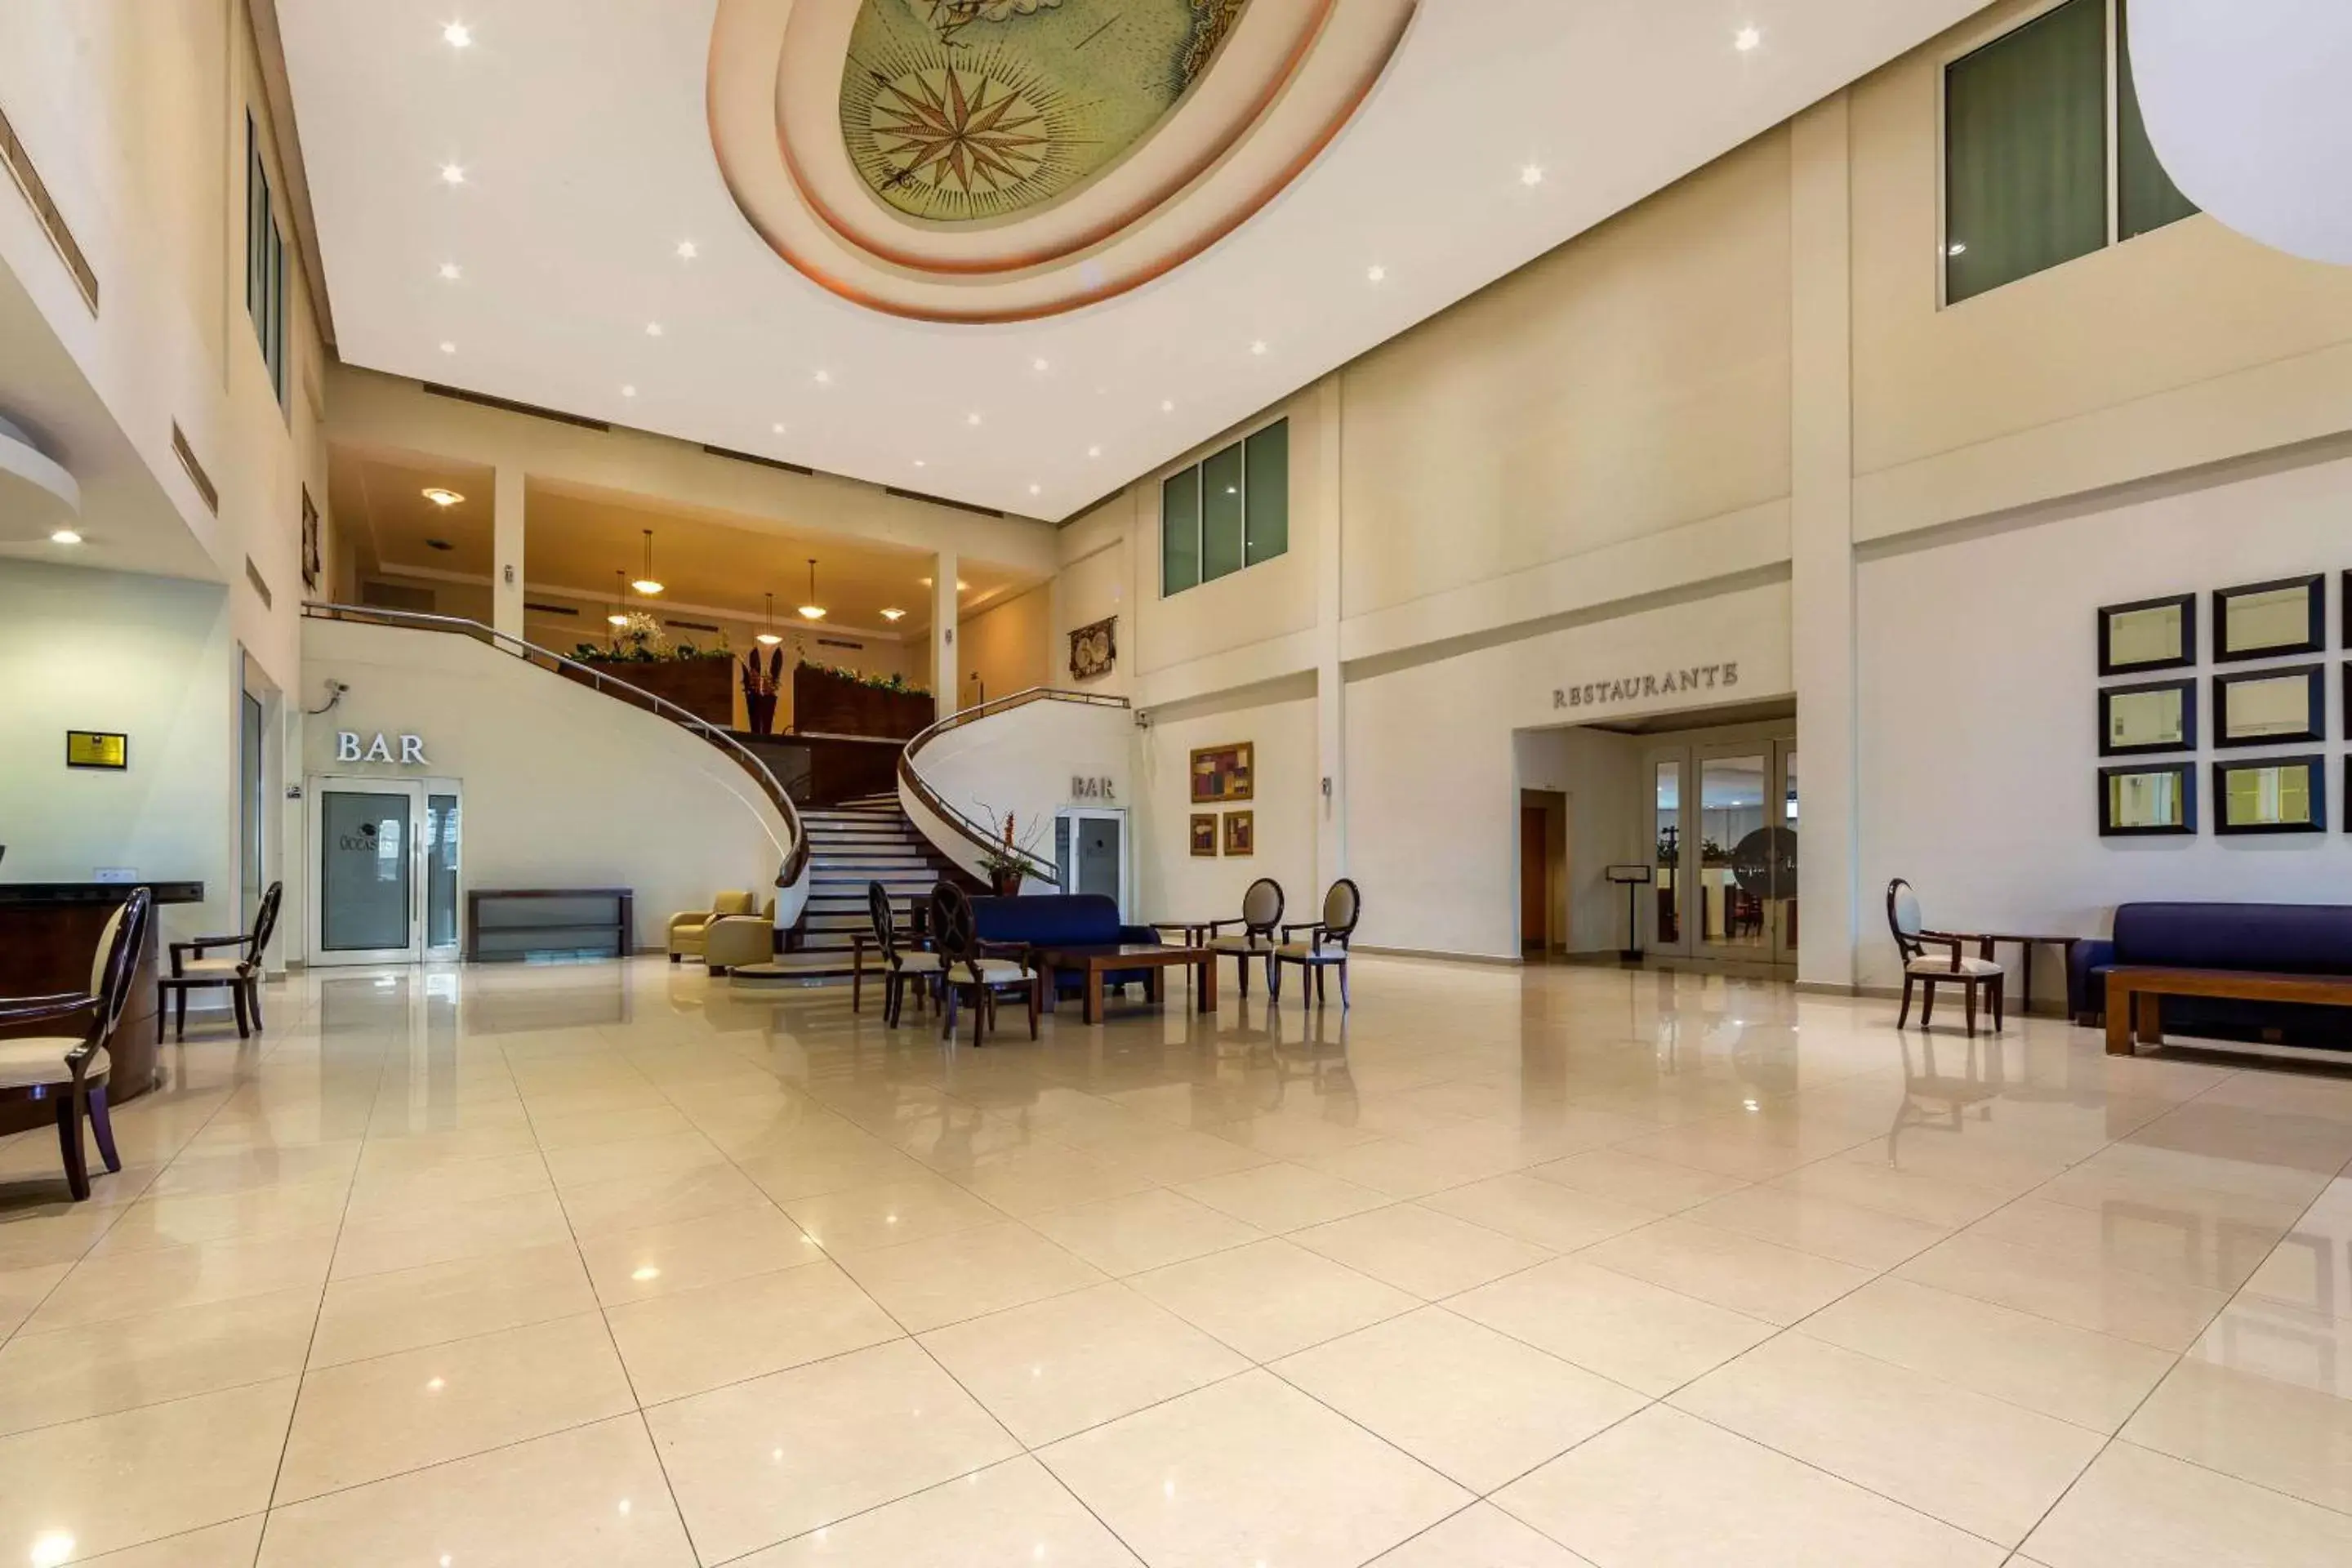 Lobby or reception in Hotel Comfort Inn Monterrey Norte